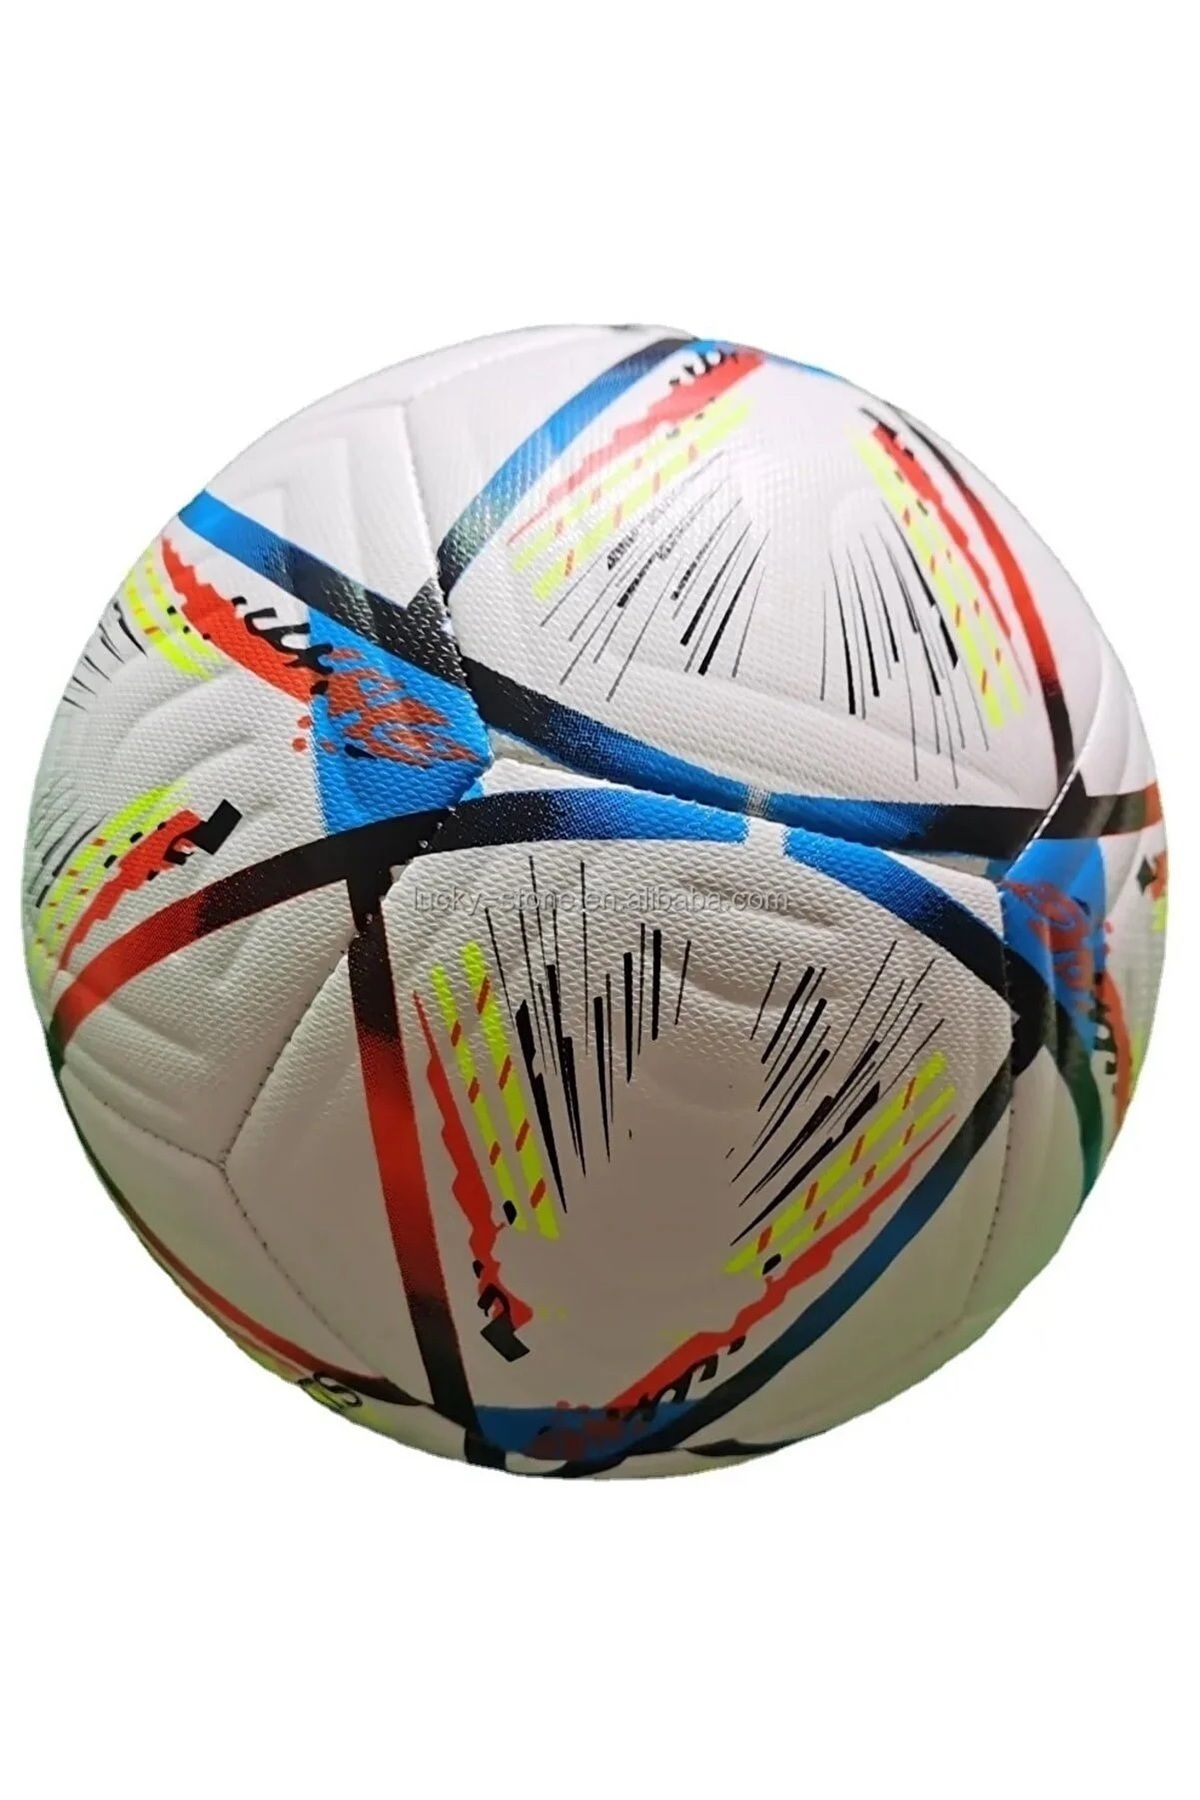 AGUILAS Futbol Topu Dünya Kupası Özel Tasarım. 1.kalite Profosyonel Top Halı Saha Çim Saha Sporcu (420 Gram)